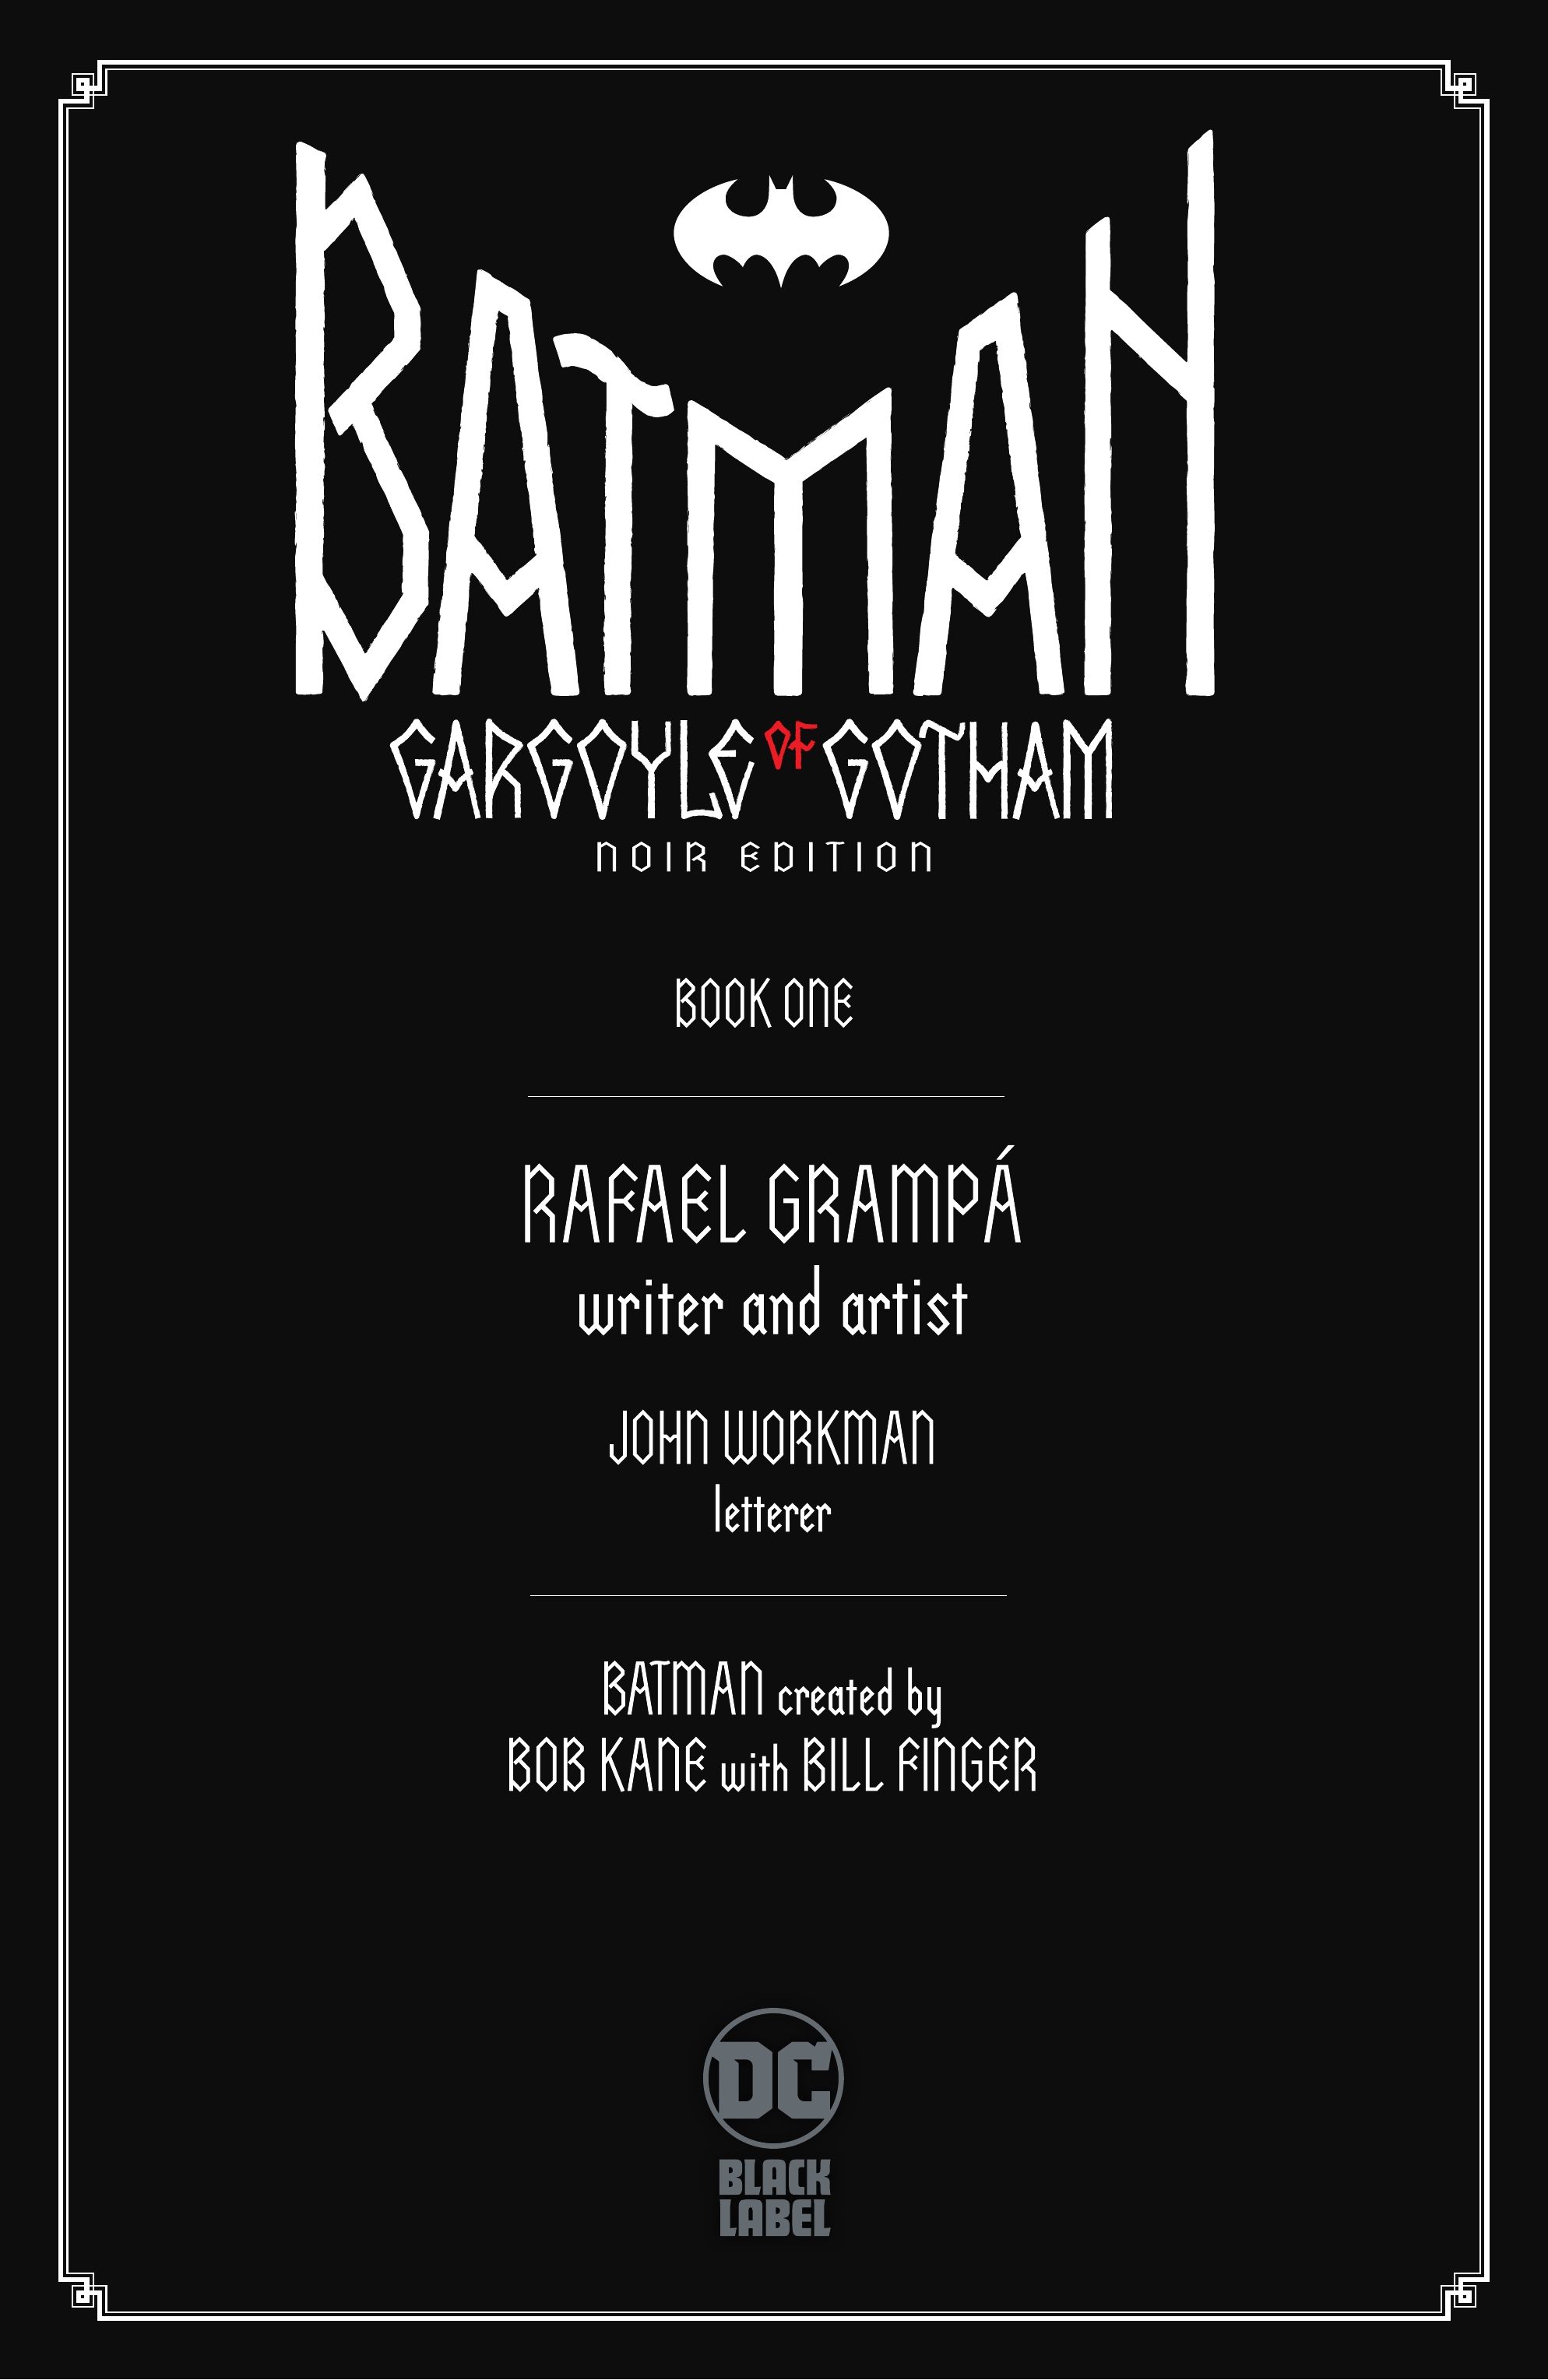 Read online Batman: Gargoyle of Gotham Noir Edition comic -  Issue #1 - 3